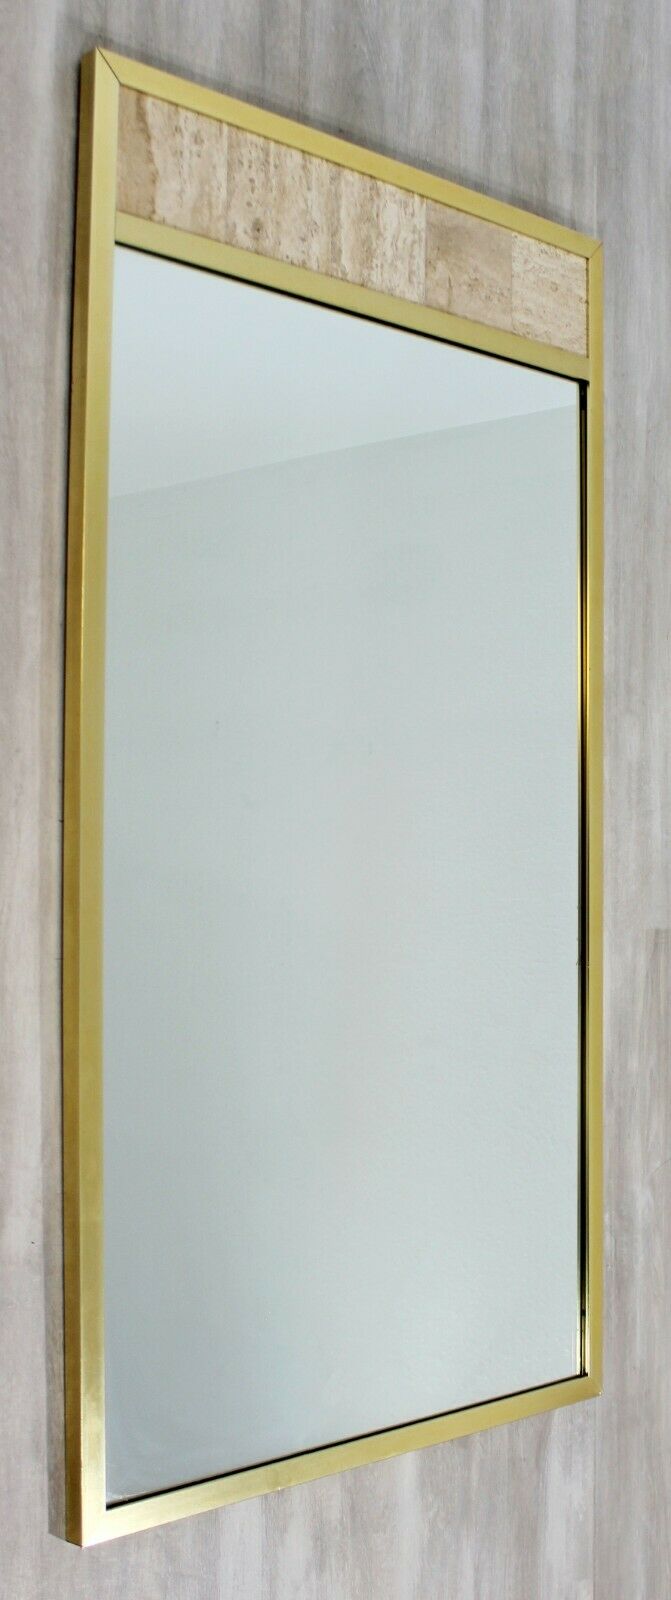 Mid Century Modern Travertine & Brass Rectangular Wall Mirror by Metz 1970s